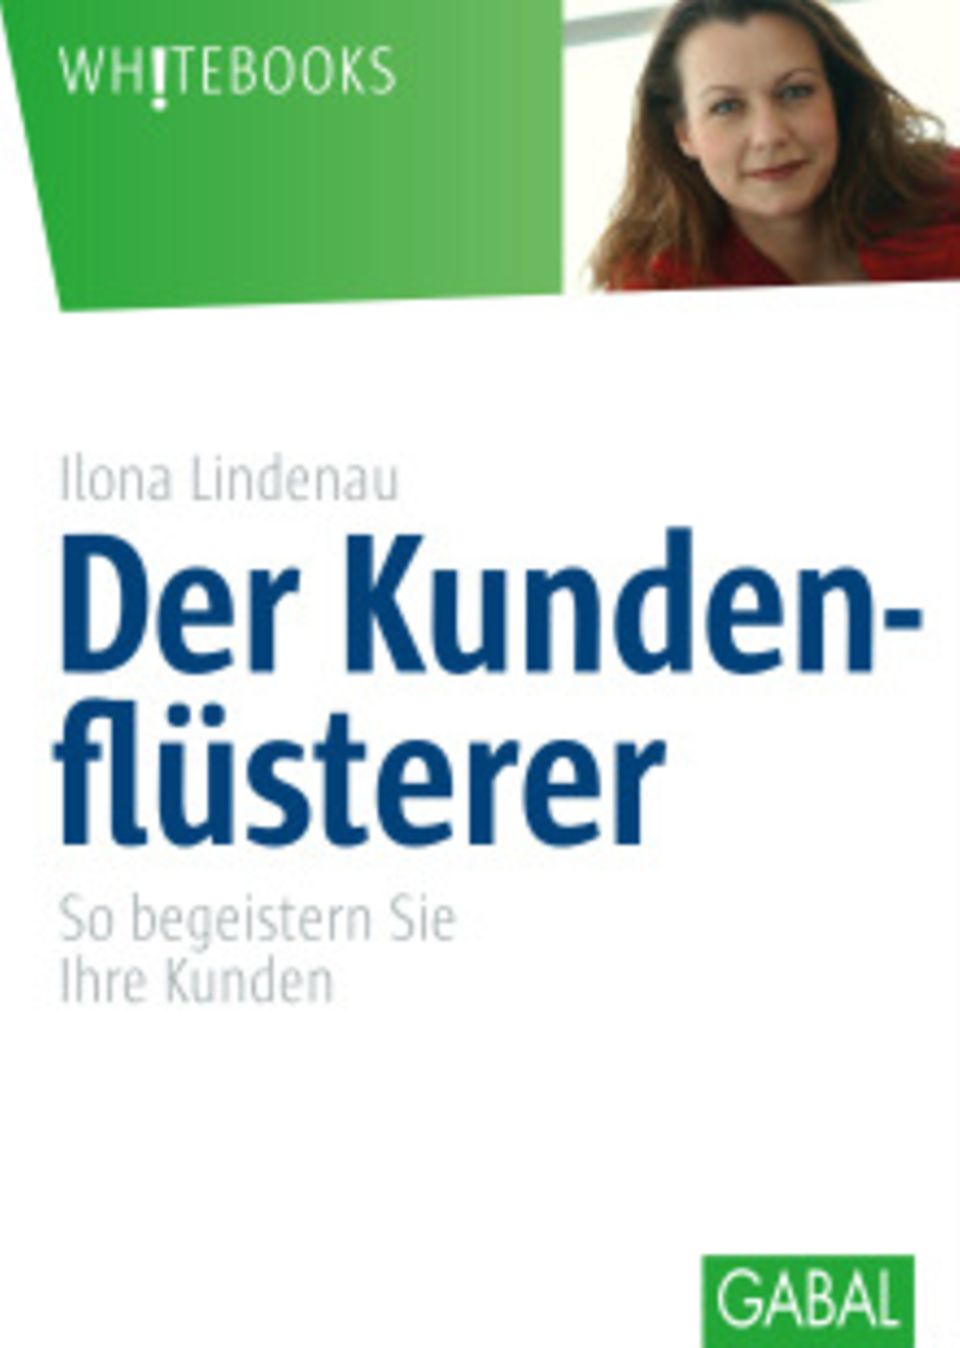 Ilona Lindenaus Buch ist im Gabel Verlag erschienen